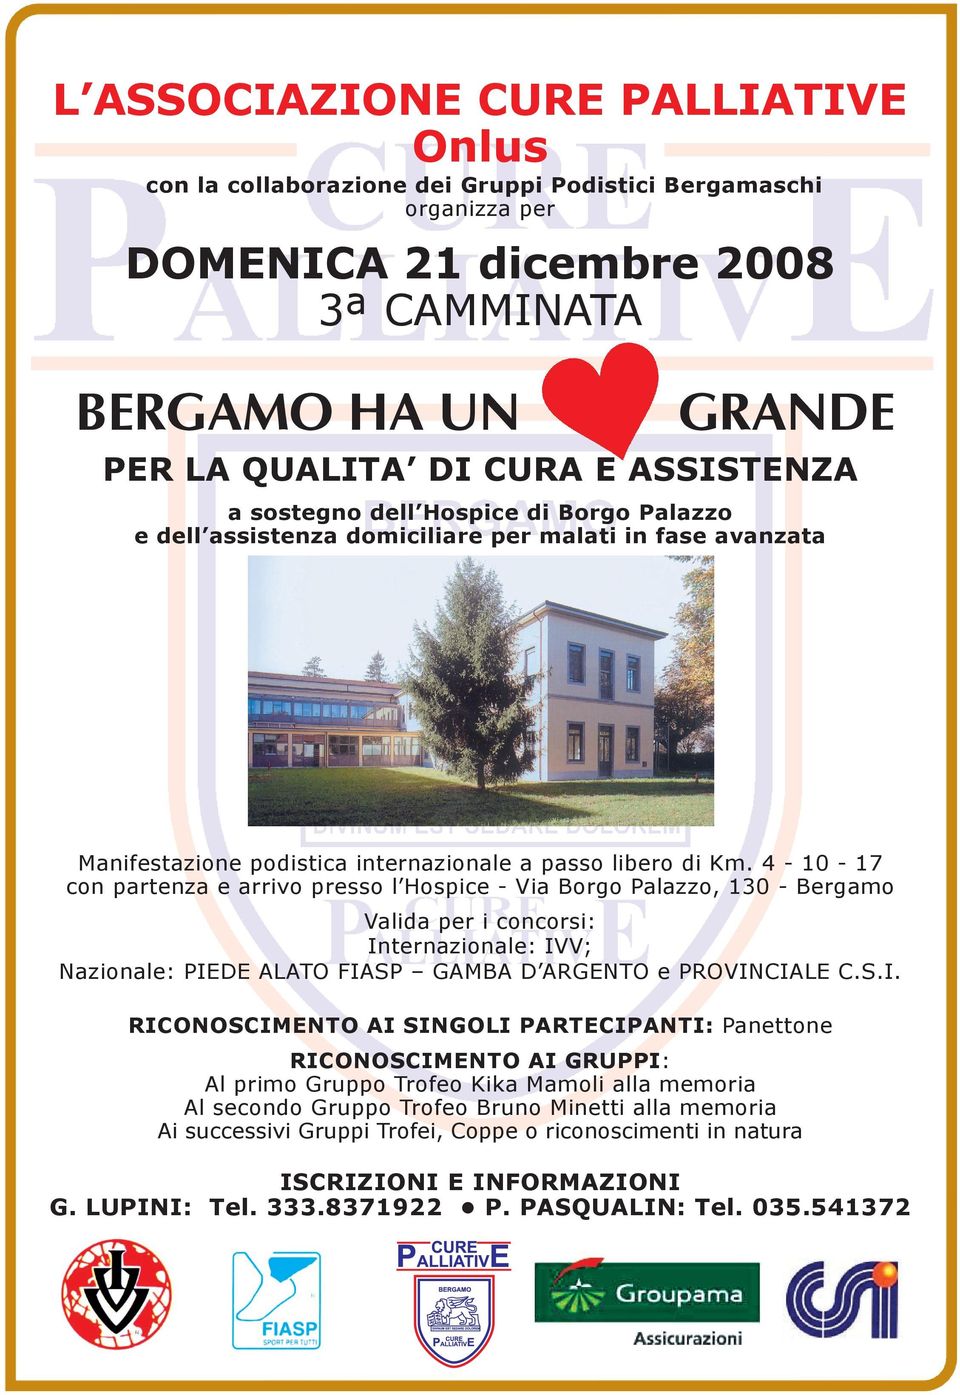 4-10-17 con partenza e arrivo presso l Hospice - Via Borgo Palazzo, 130 - Bergamo Valida per i concorsi: In